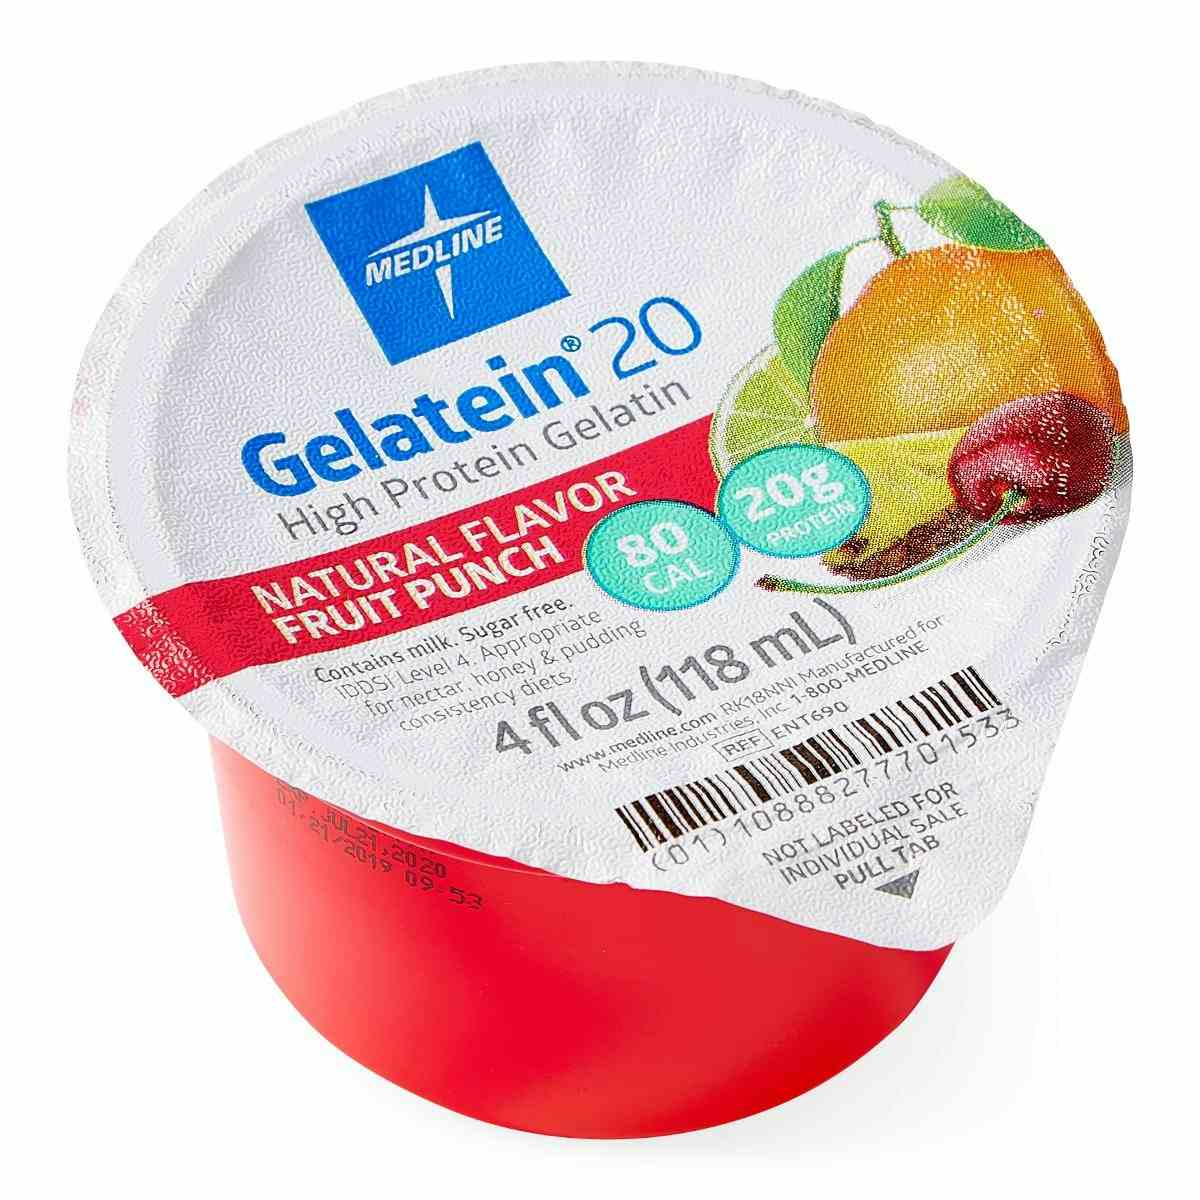 Medline Gelatein 20 High Protein Supplement, Fruit Punch Flavor, 4-oz., ENT690, Case of 36